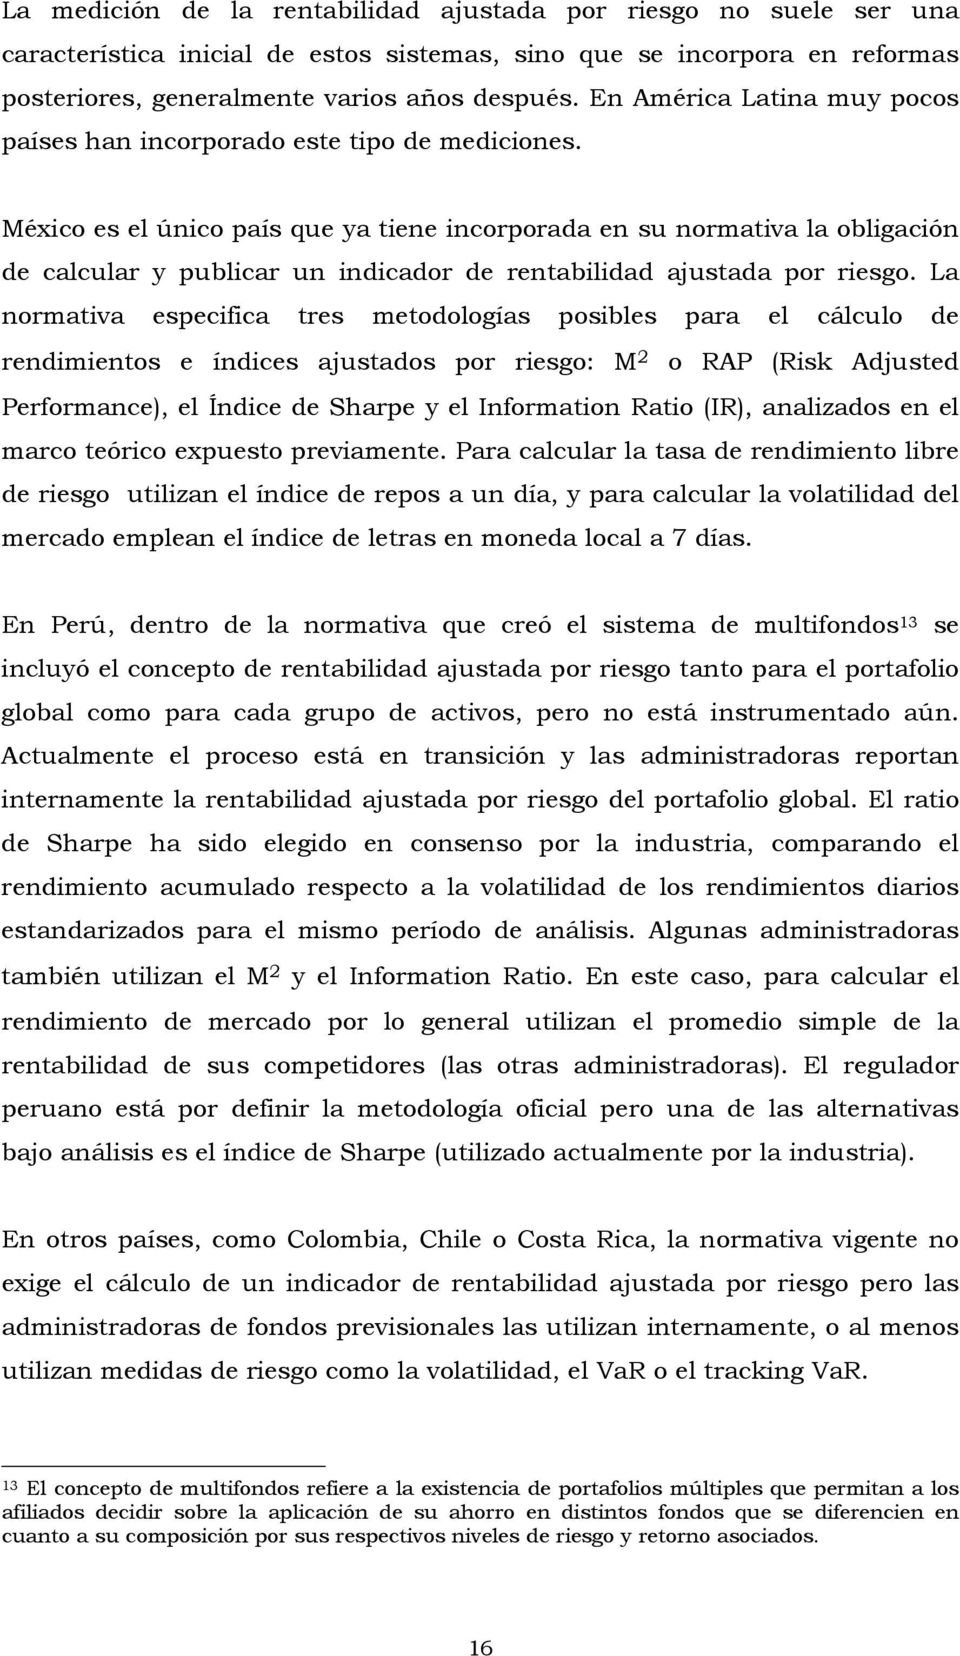 México es el único país que ya tiene incorporada en su normativa la obligación de calcular y publicar un indicador de rentabilidad ajustada por riesgo.